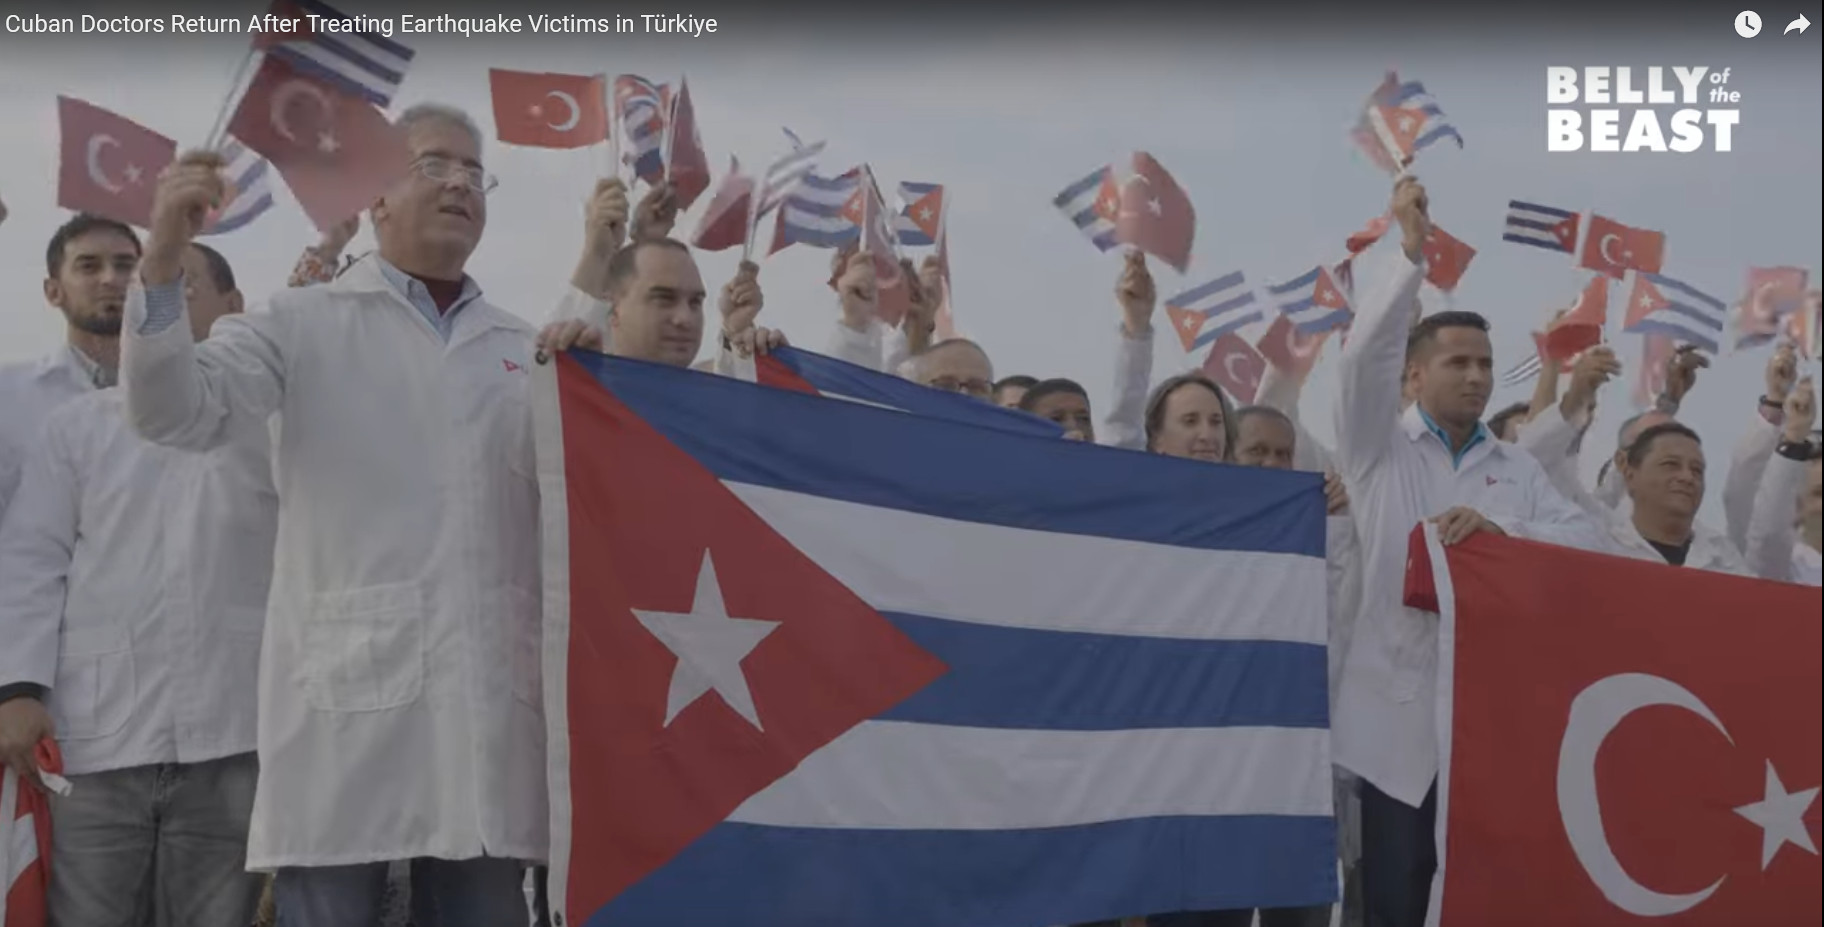 Kubanische Ärzte zurück aus der Türkei